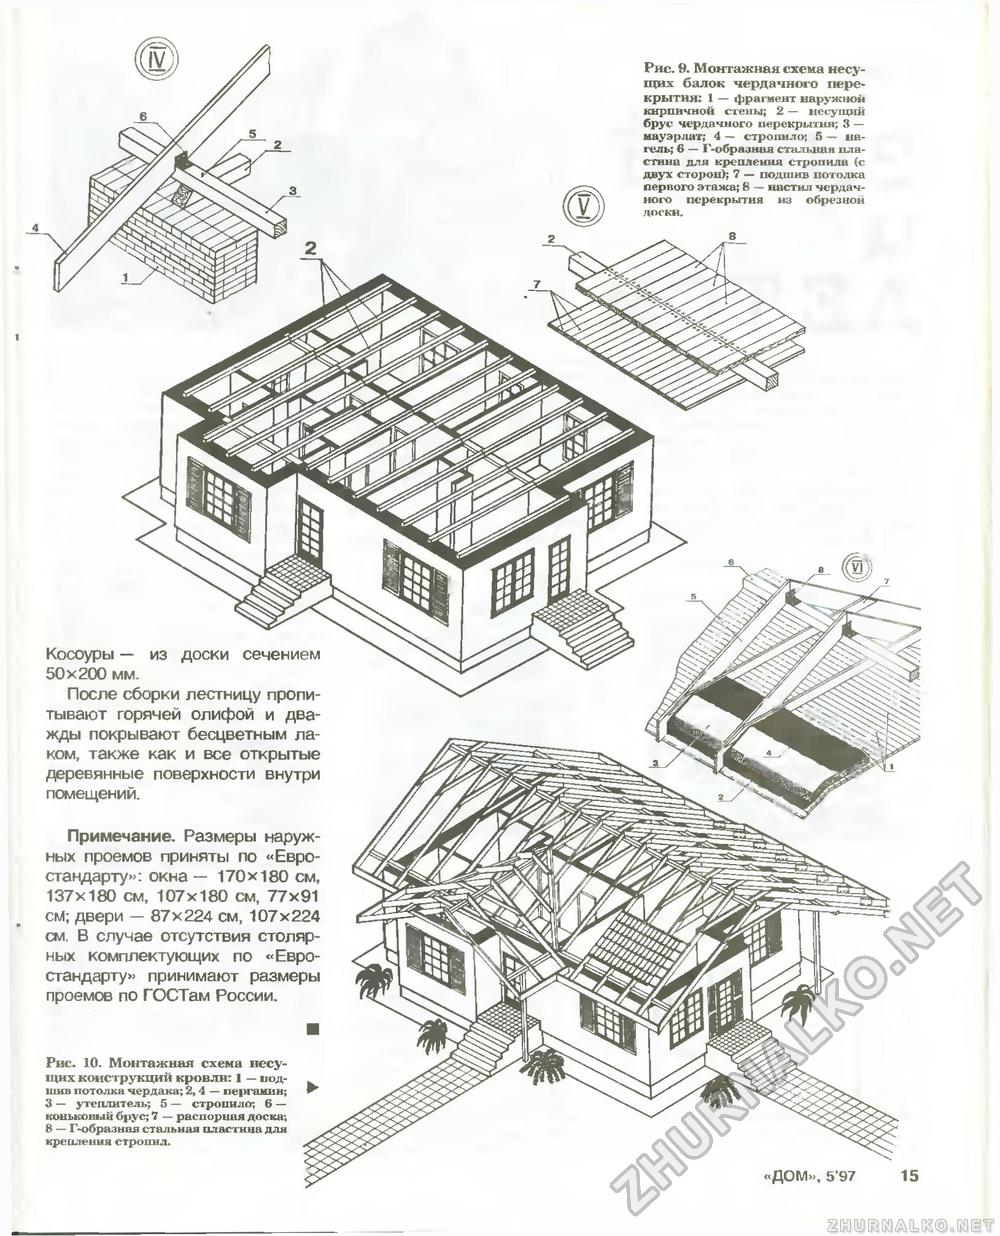 Дом 1997-05, страница 15